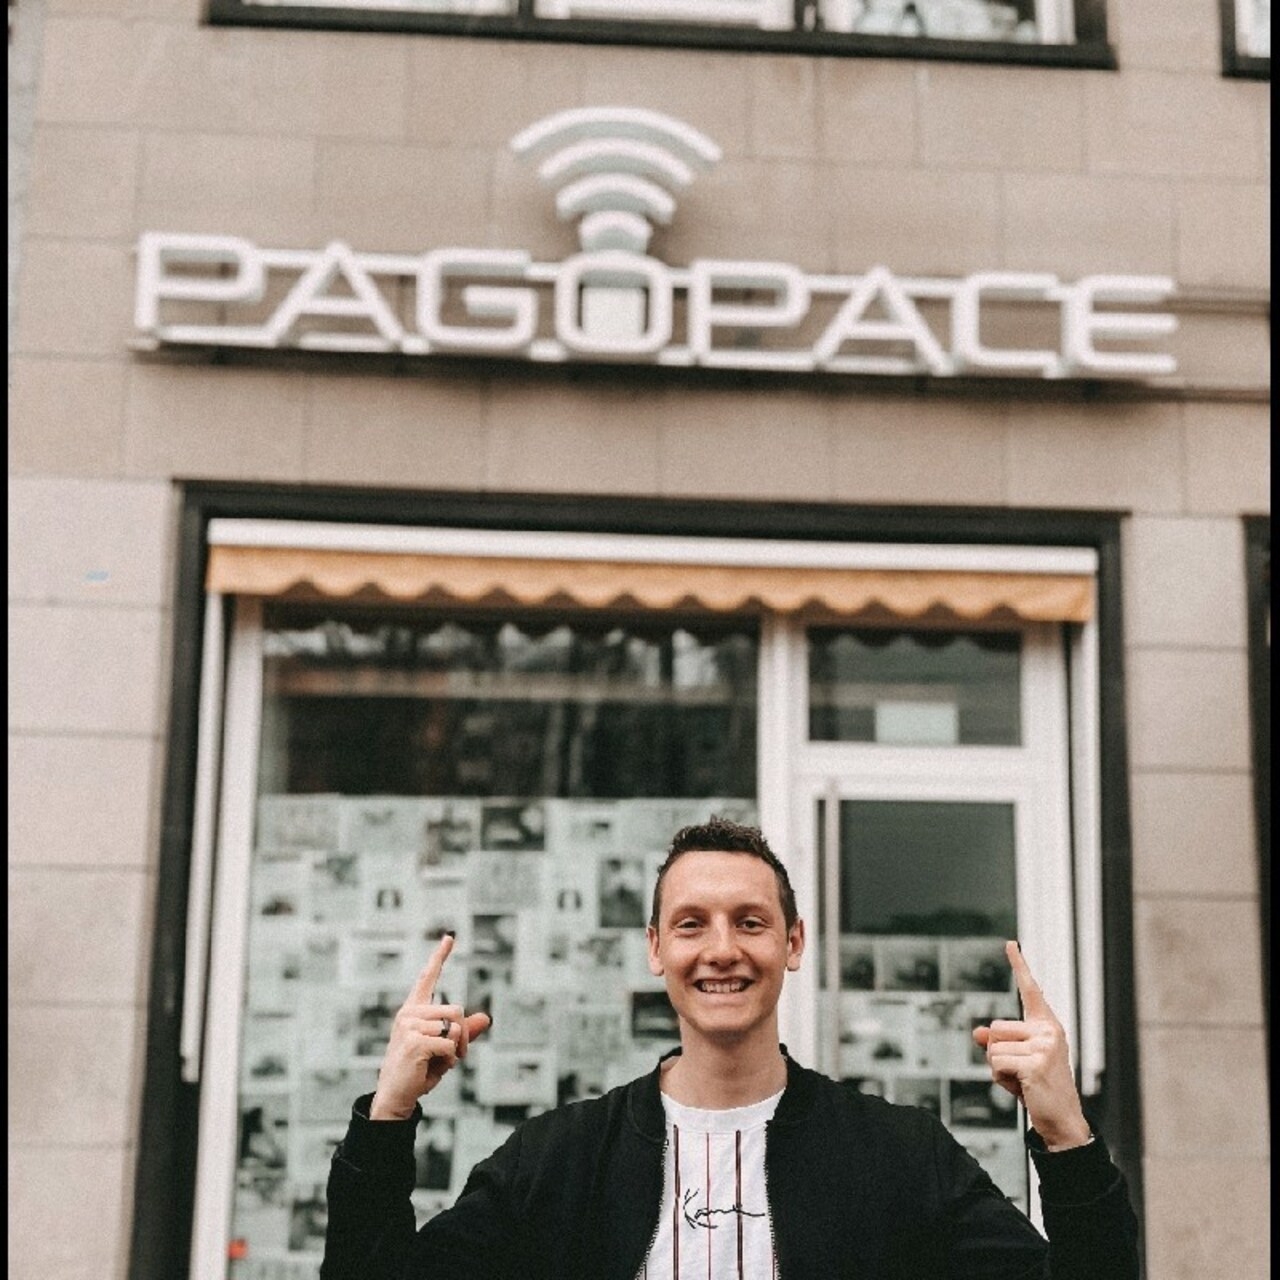 Mobilné platby: Lukas Schmitz je generálnym riaditeľom spoločnosti PAGOPACE GmbH so sídlom v Kolíne nad Rýnom v spolkovej krajine Severné Porýnie-Vestfálsko